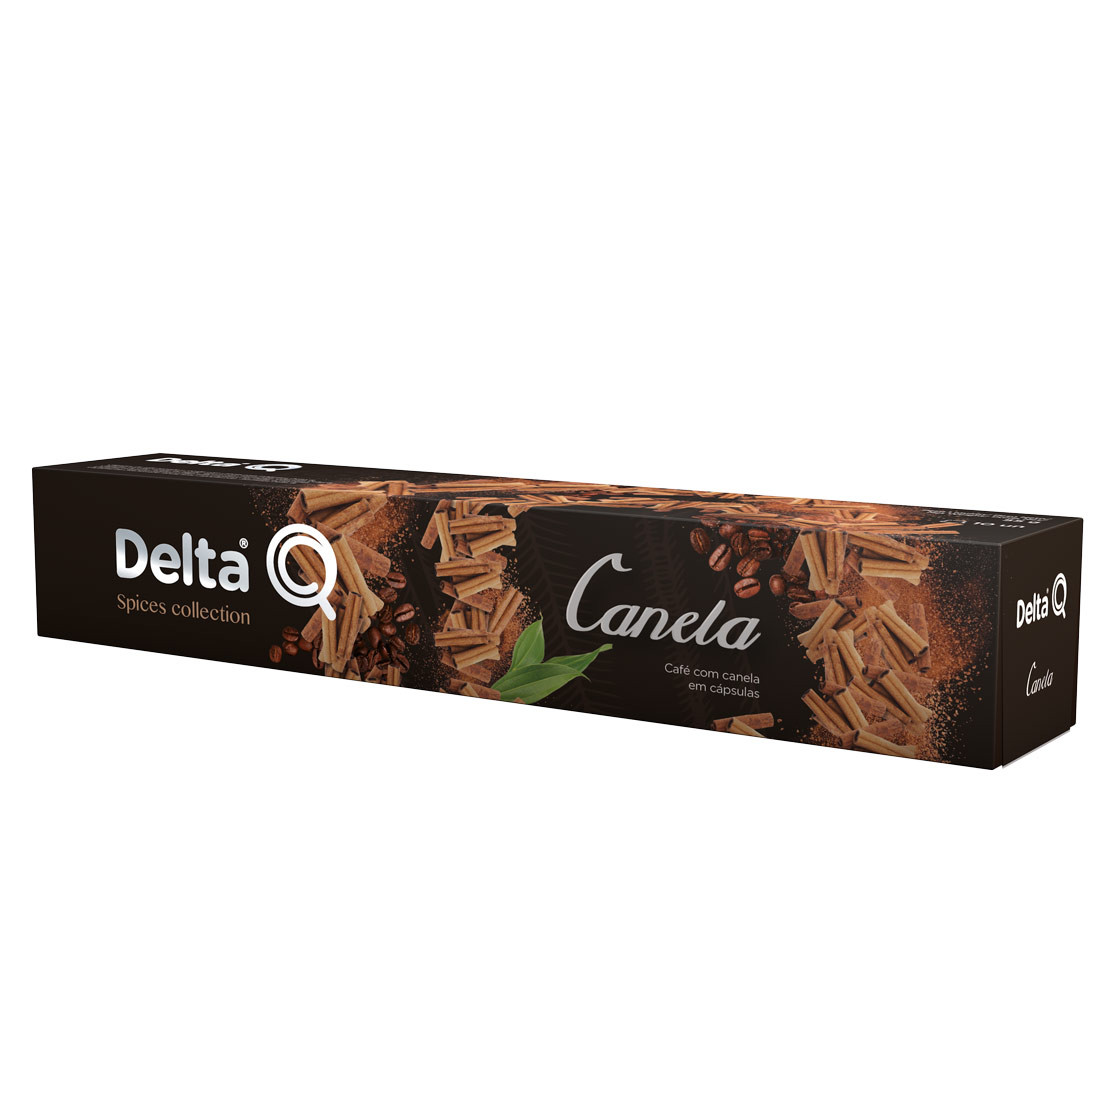 Cápsula de Café Delta Q com Canela - 10 Cápsulas